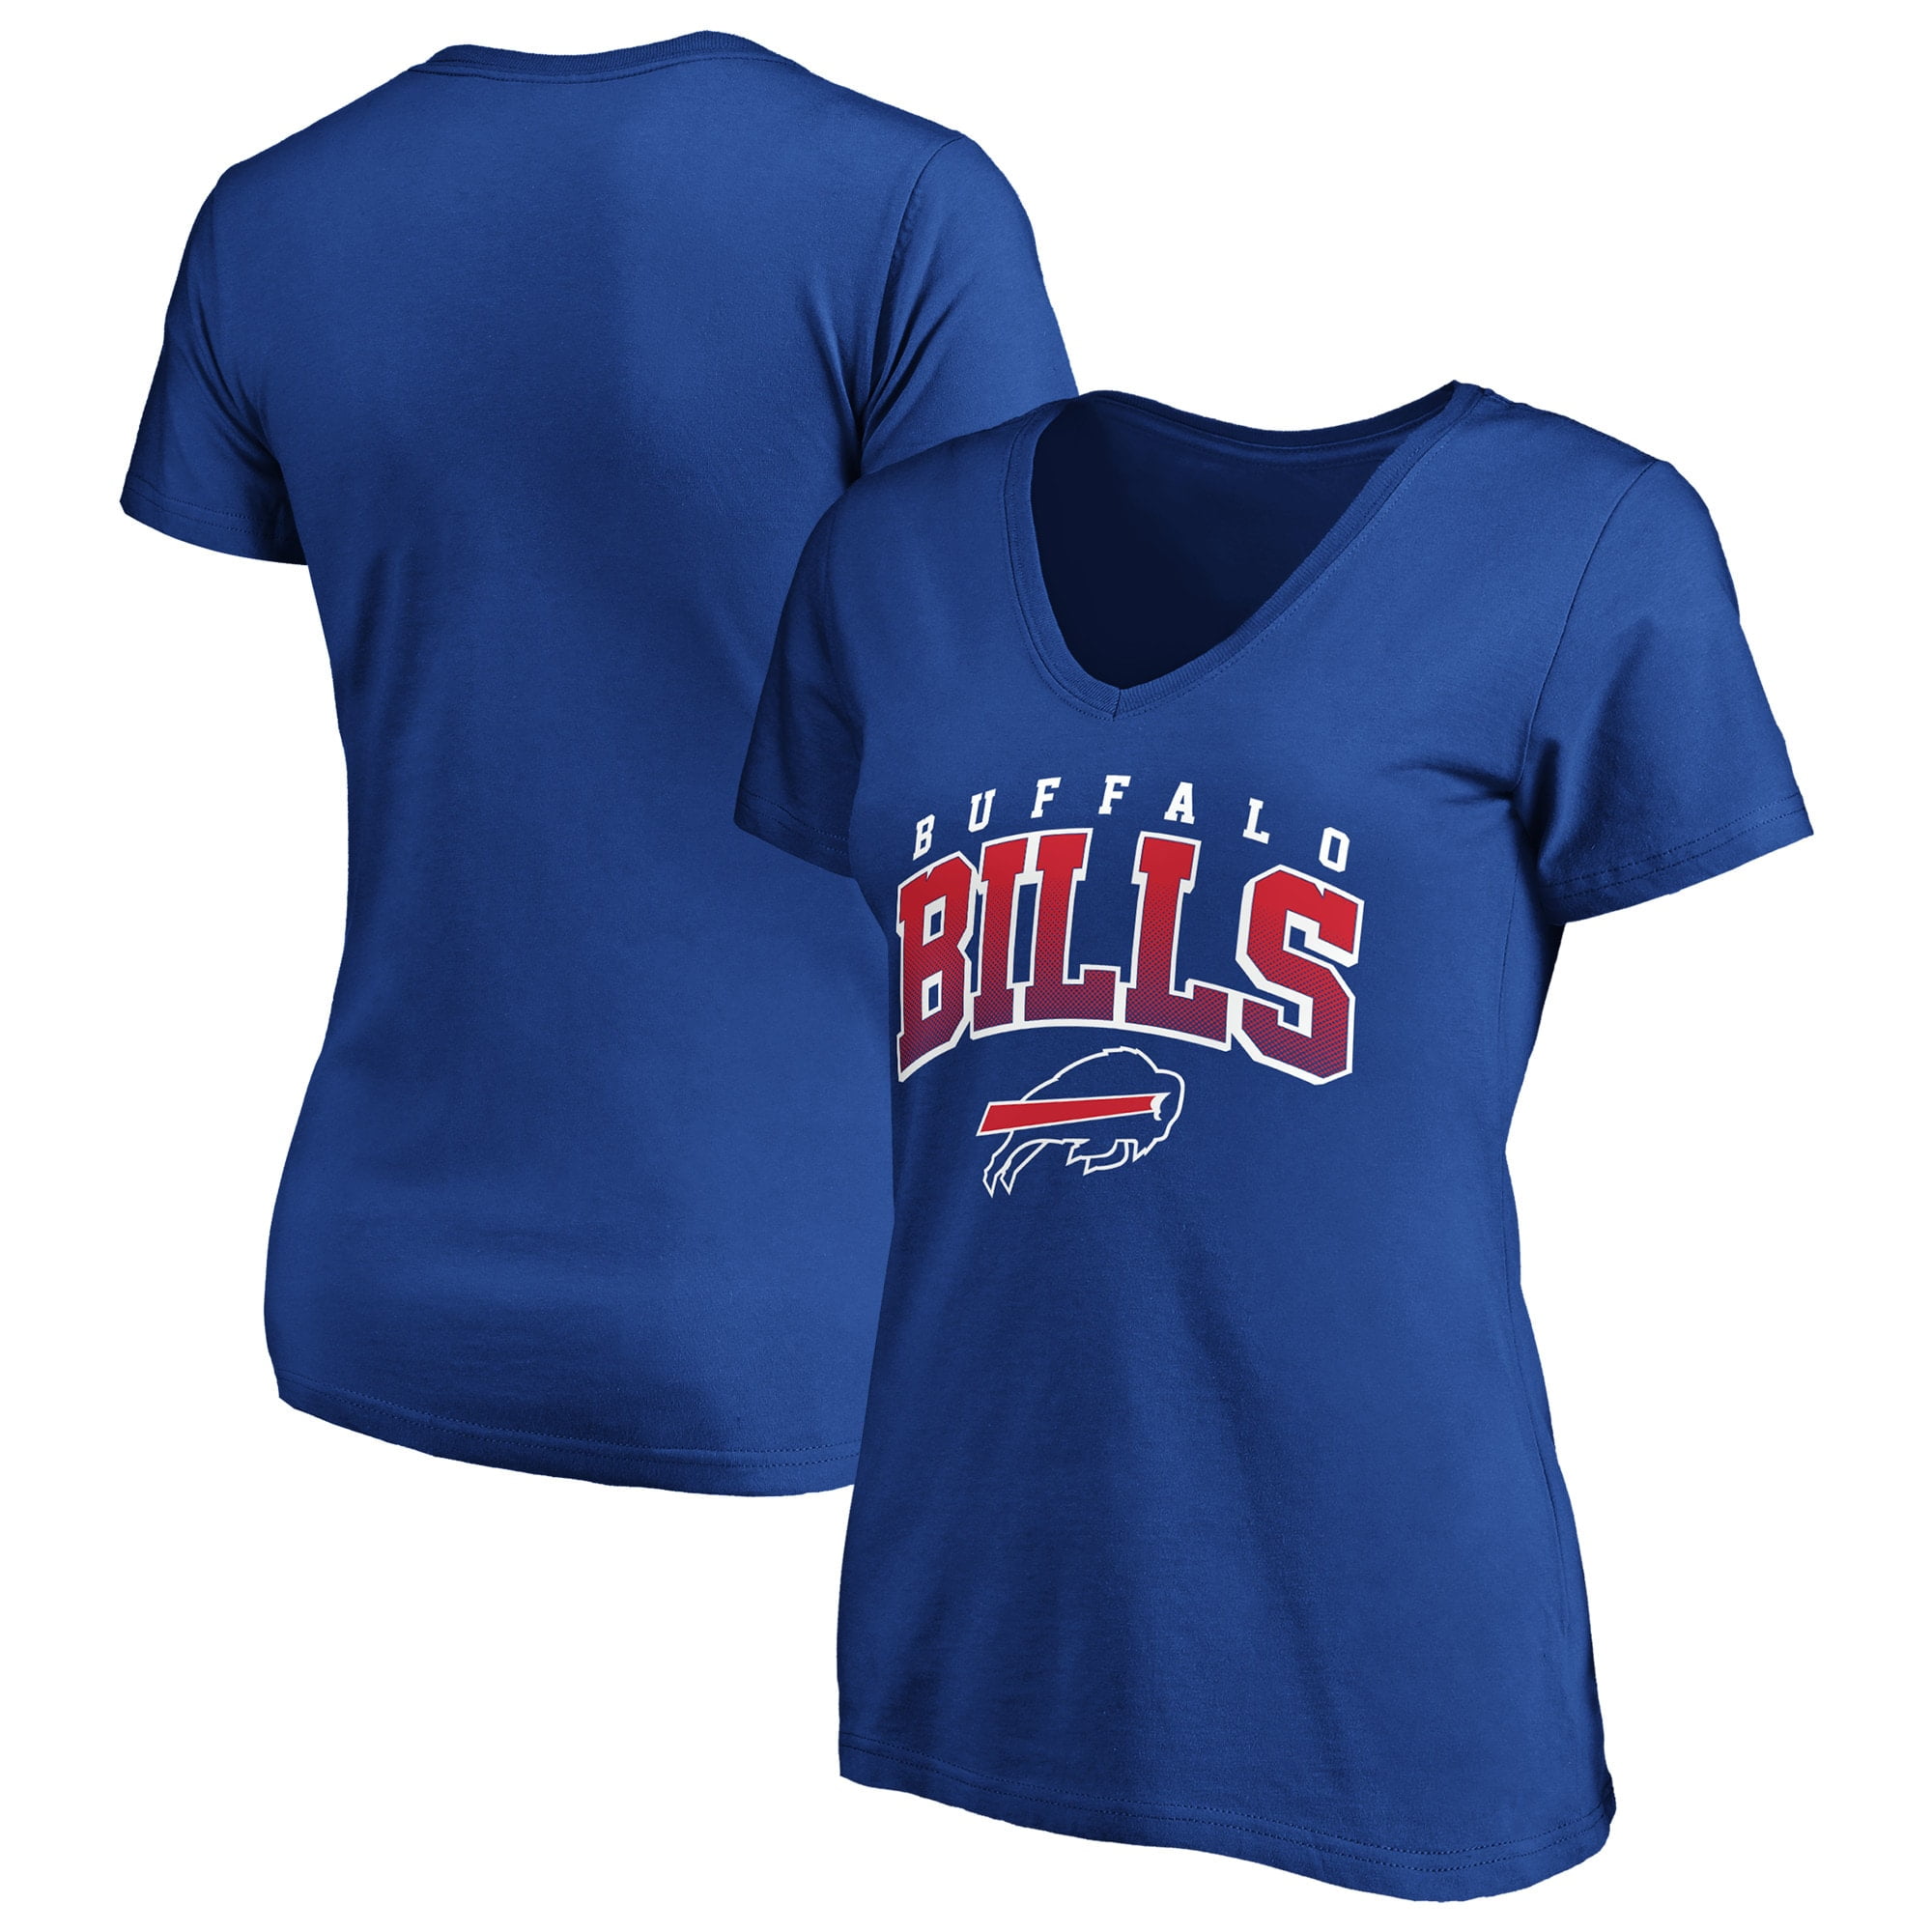 buffalo bills shirts sale